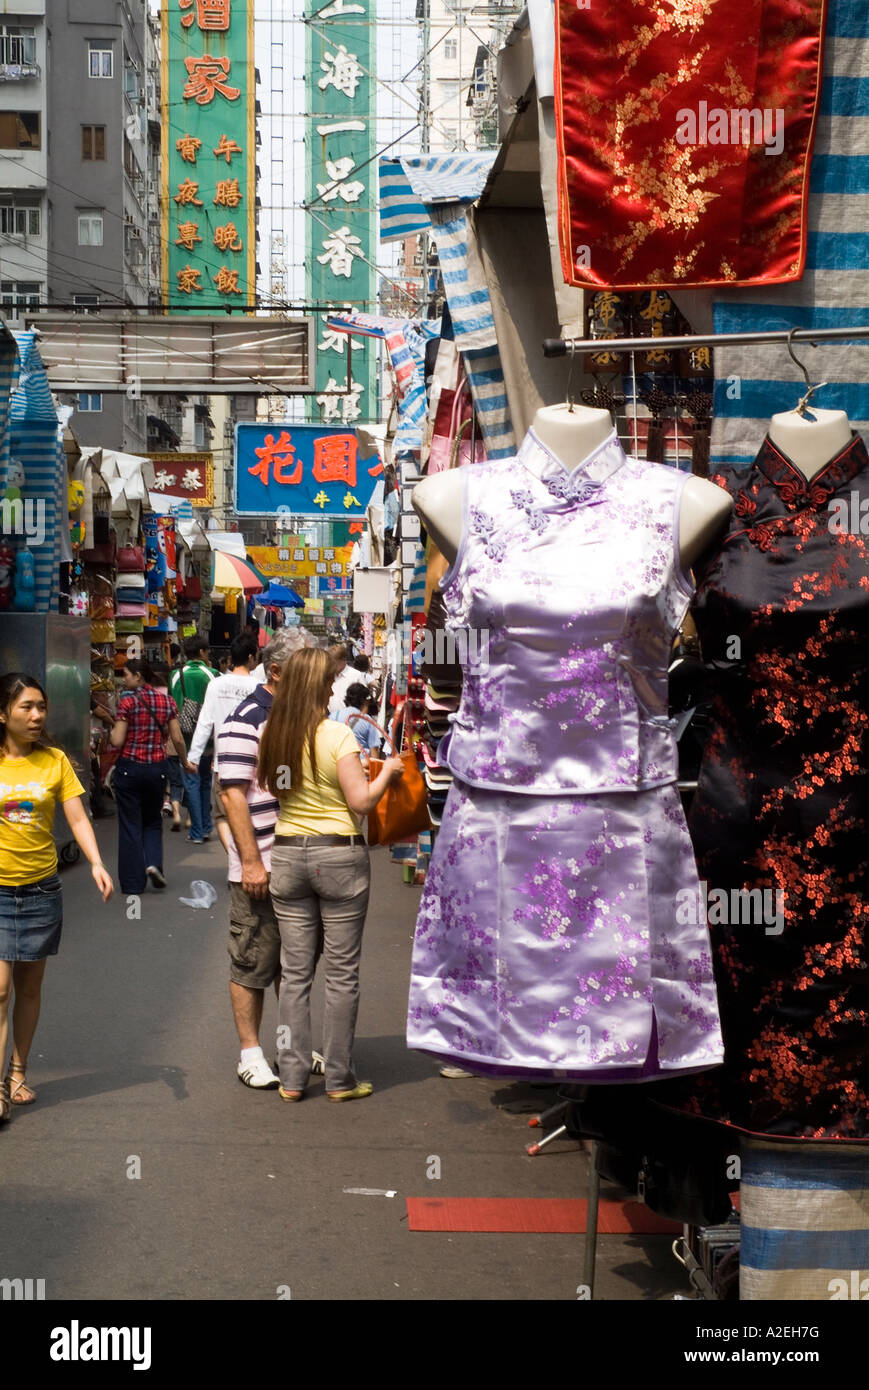 dh Ladies Market MONG KOK HONG KONG couple touristique shopping dans le marché de rue chinois soie short cheongsam robe tung choi vêtements de touristes mongkok Banque D'Images